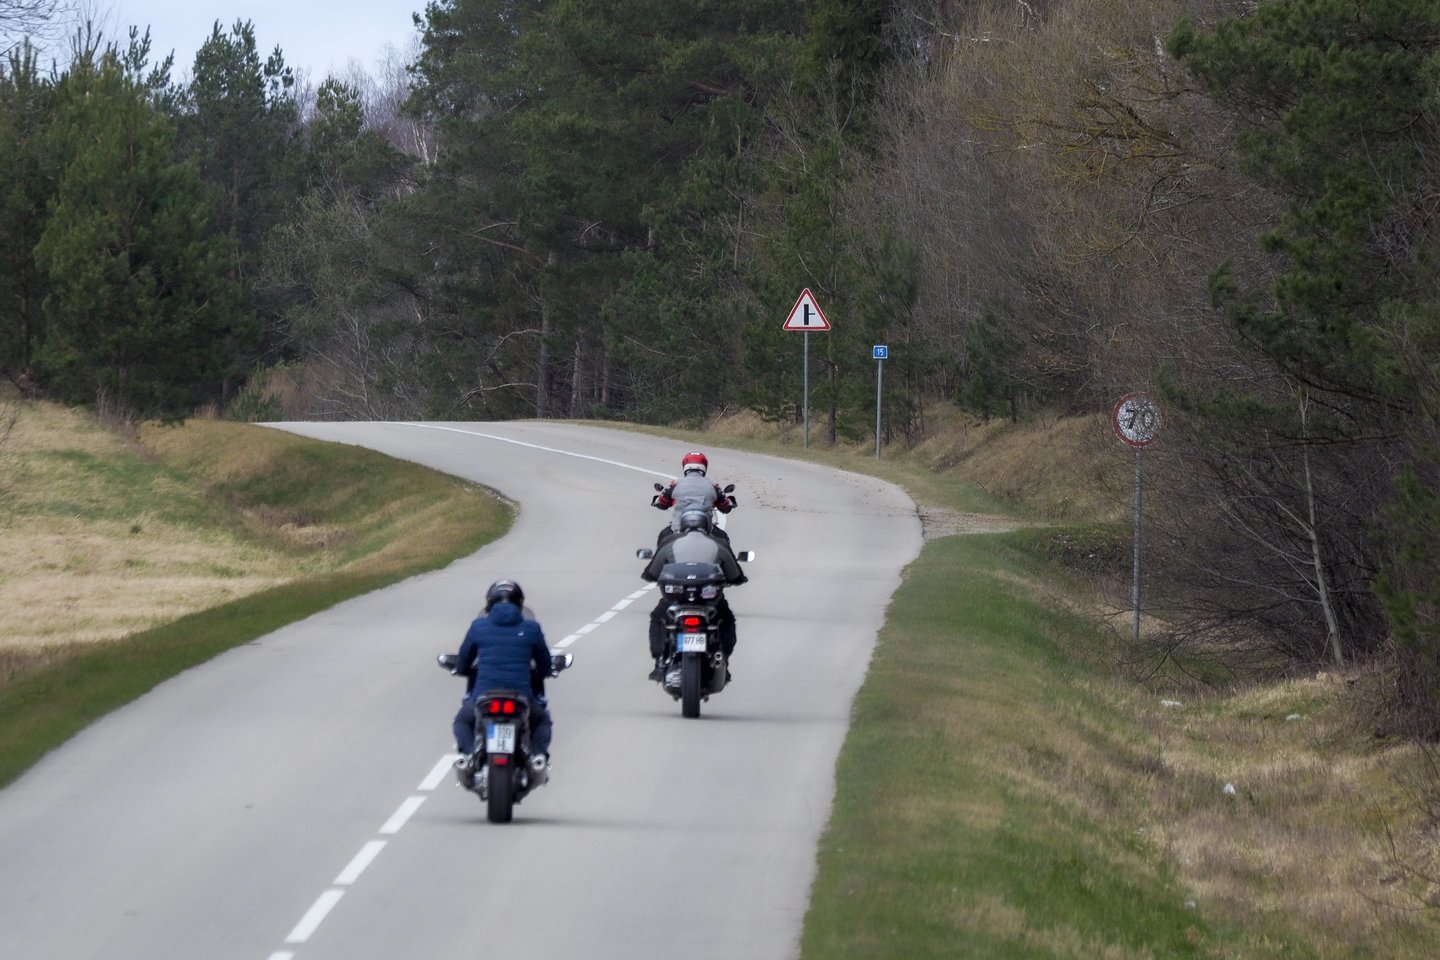 Motociklininkų sezonas įsibėgėja. Vis daugiau žmonių ryžtasi mokytis vairuoti ir sėsti ant dviračių transporto priemonių.<br>V.Ščiavinsko nuotr.